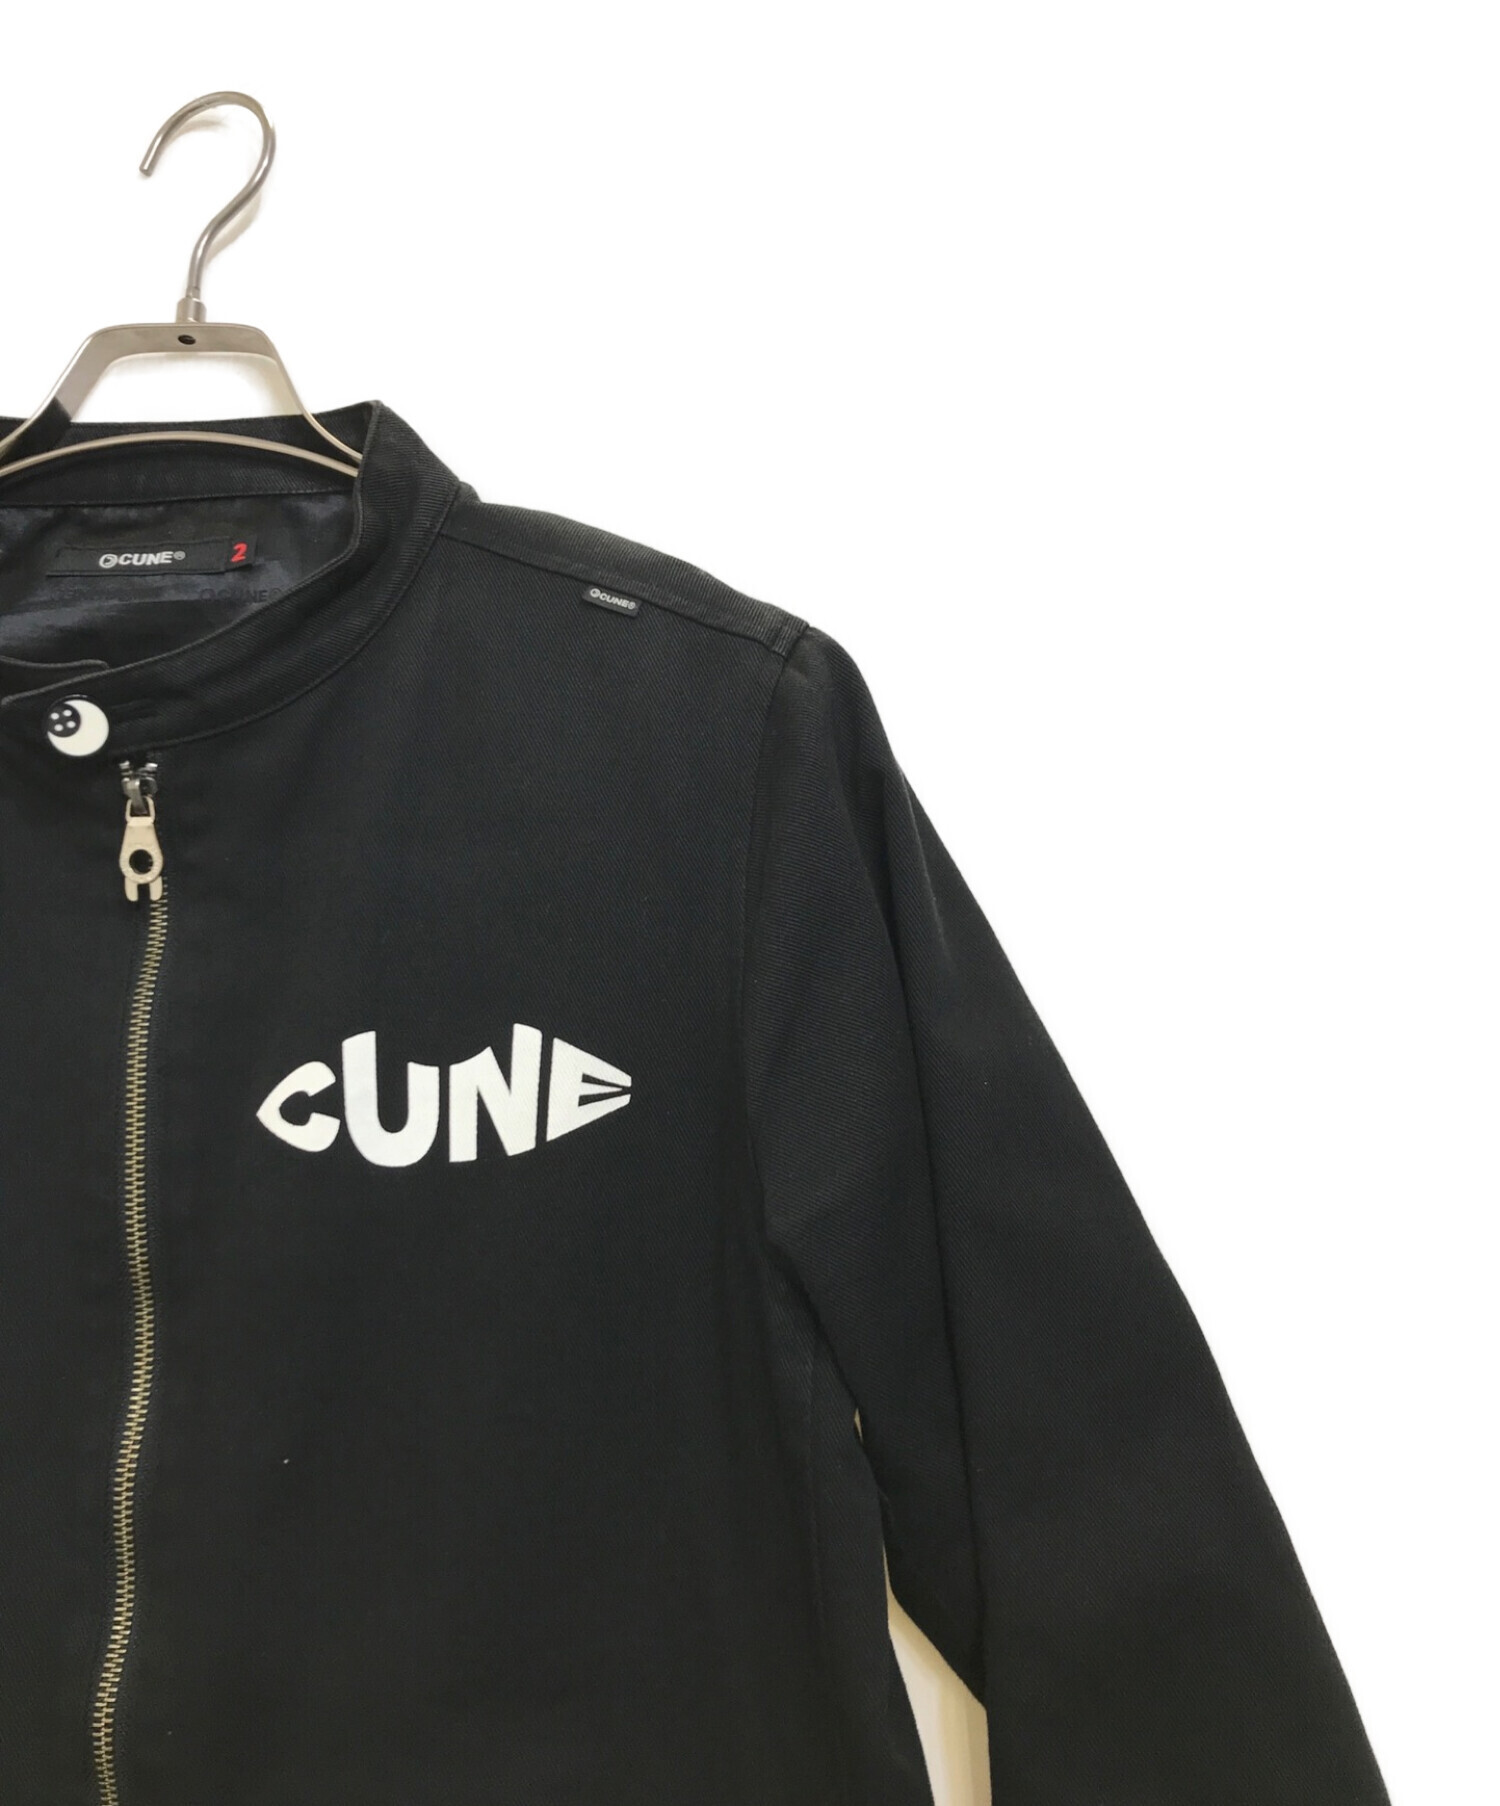 CUNE (キューン) コットンライダースジャケット ブラック サイズ:M